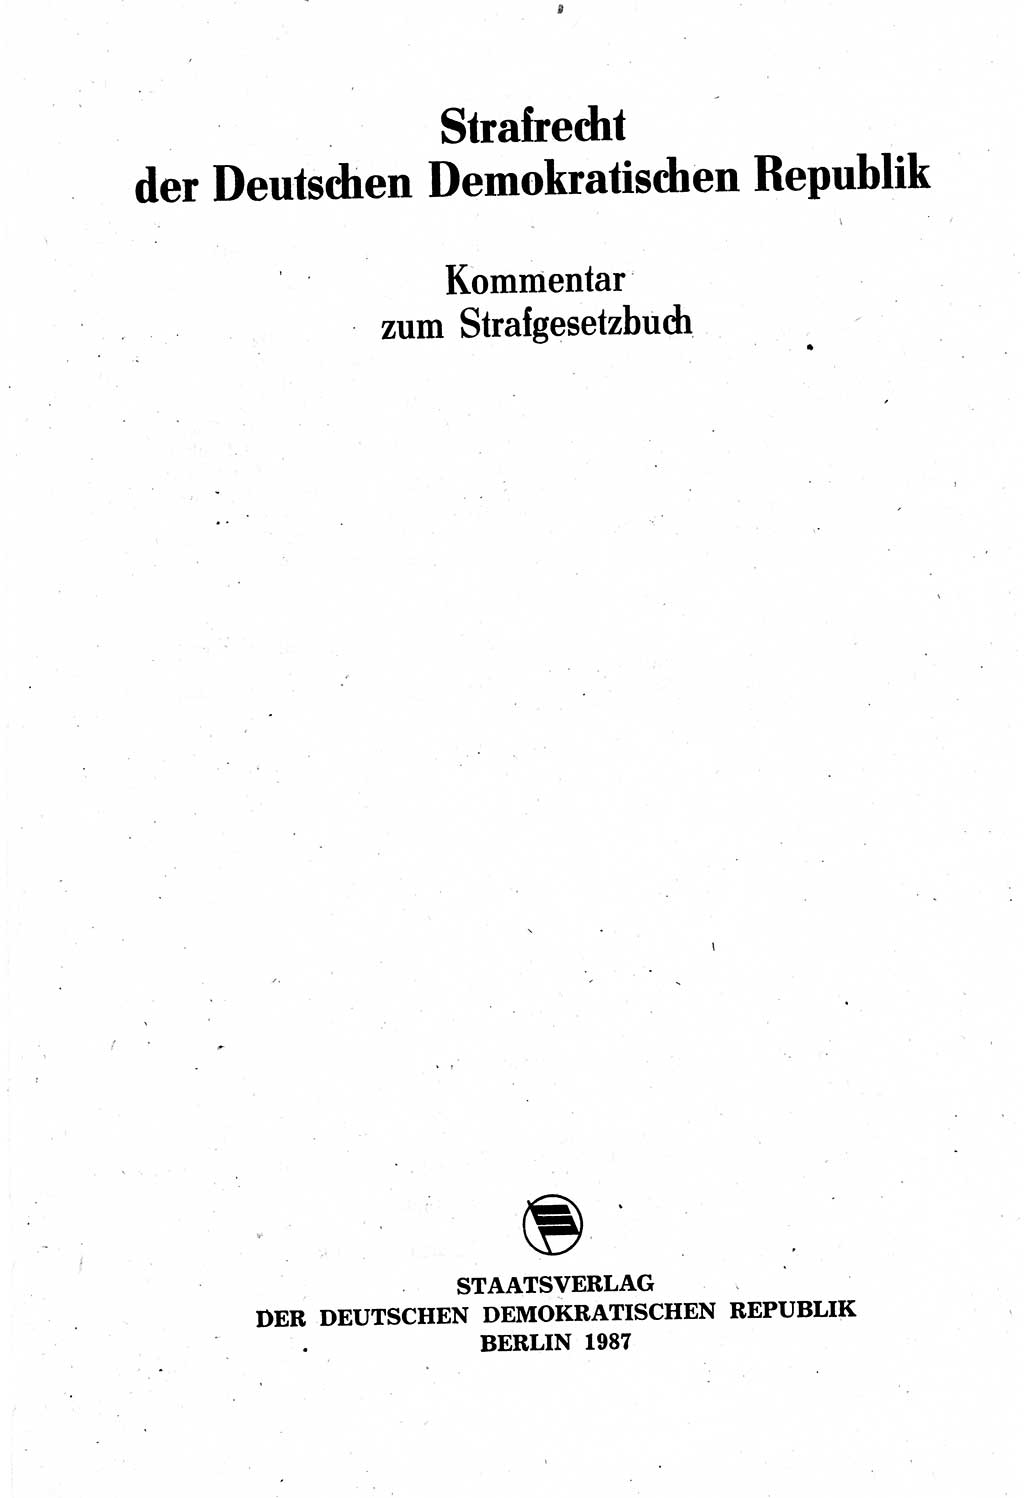 Strafrecht der Deutschen Demokratischen Republik (DDR), Kommentar zum Strafgesetzbuch (StGB) 1987, Seite 3 (Strafr. DDR Komm. StGB 1987, S. 3)